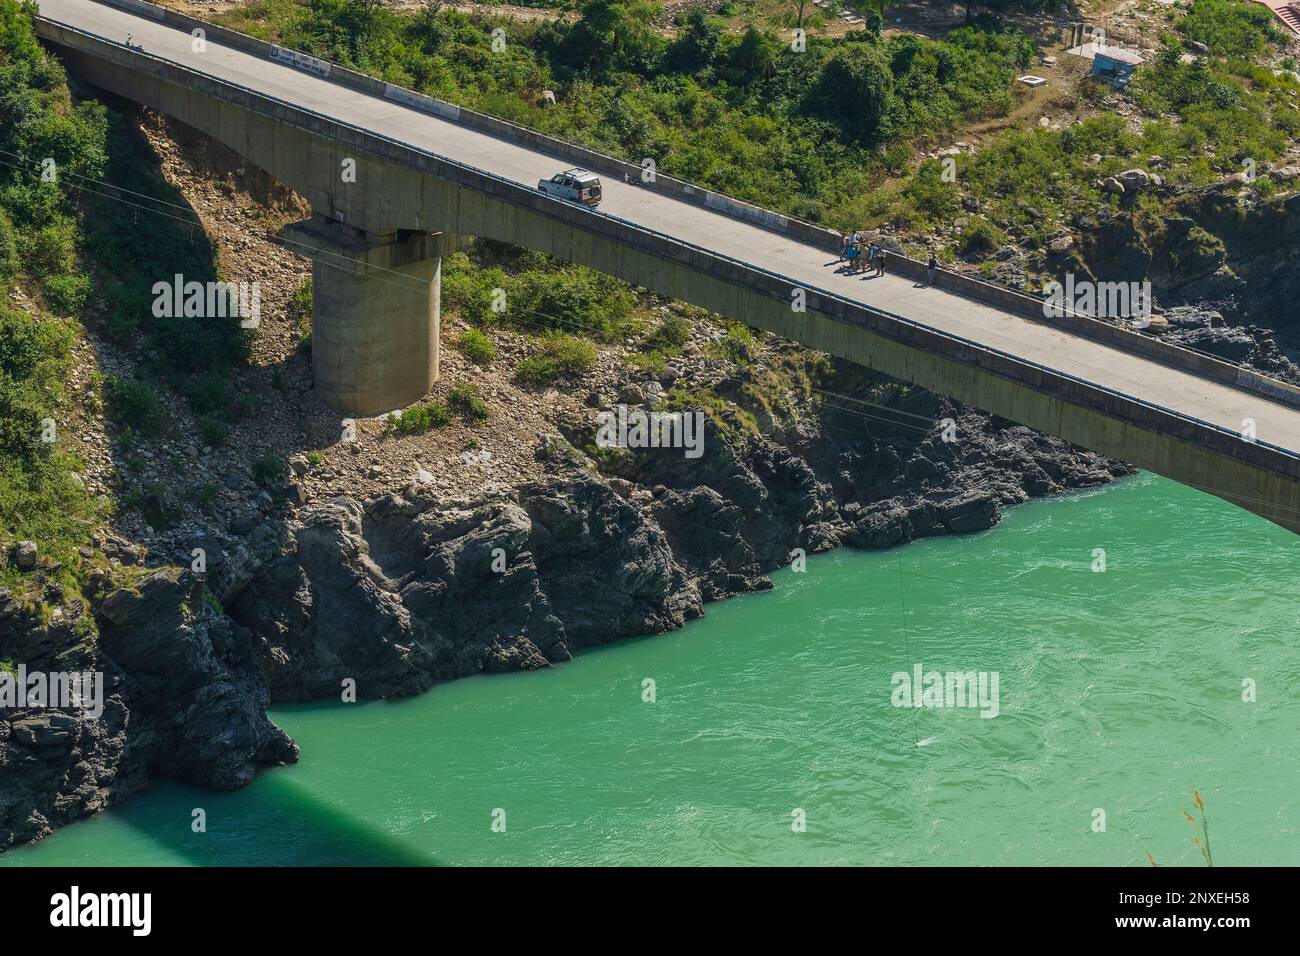 Ingénieurs réparant le pont sur le ruisseau de la rivière Alakananda avec la couleur bleu turquoise dot ci-dessous à Devprayag, conflunece Sainte. Une voiture passe. Inde. Banque D'Images